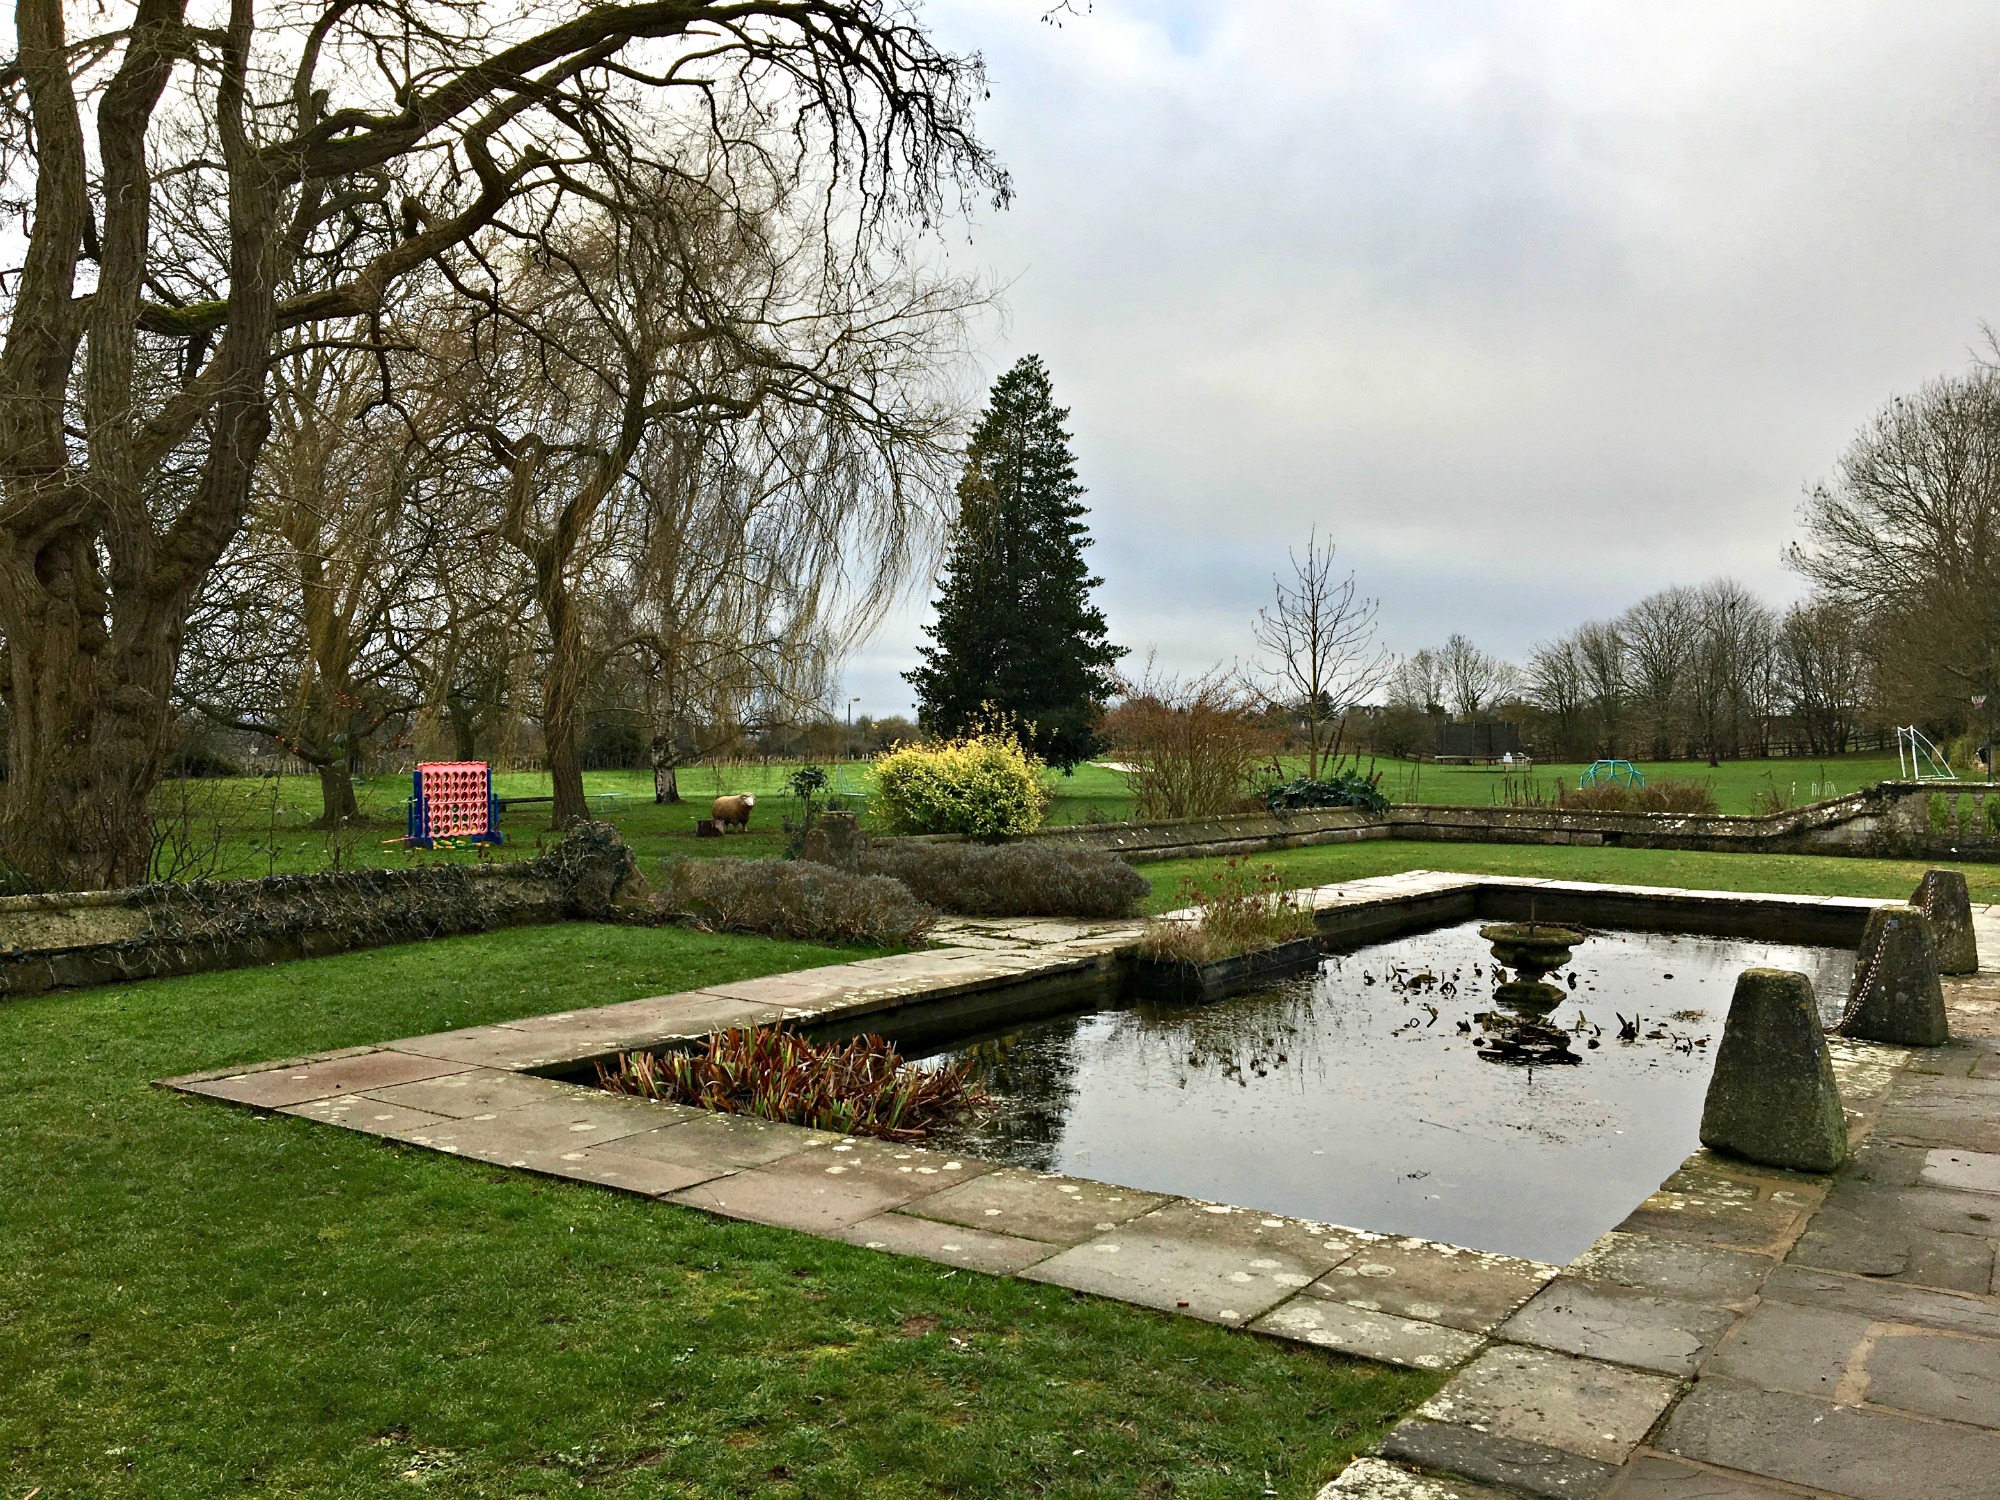 Woolley Grange grounds, Wiltshire